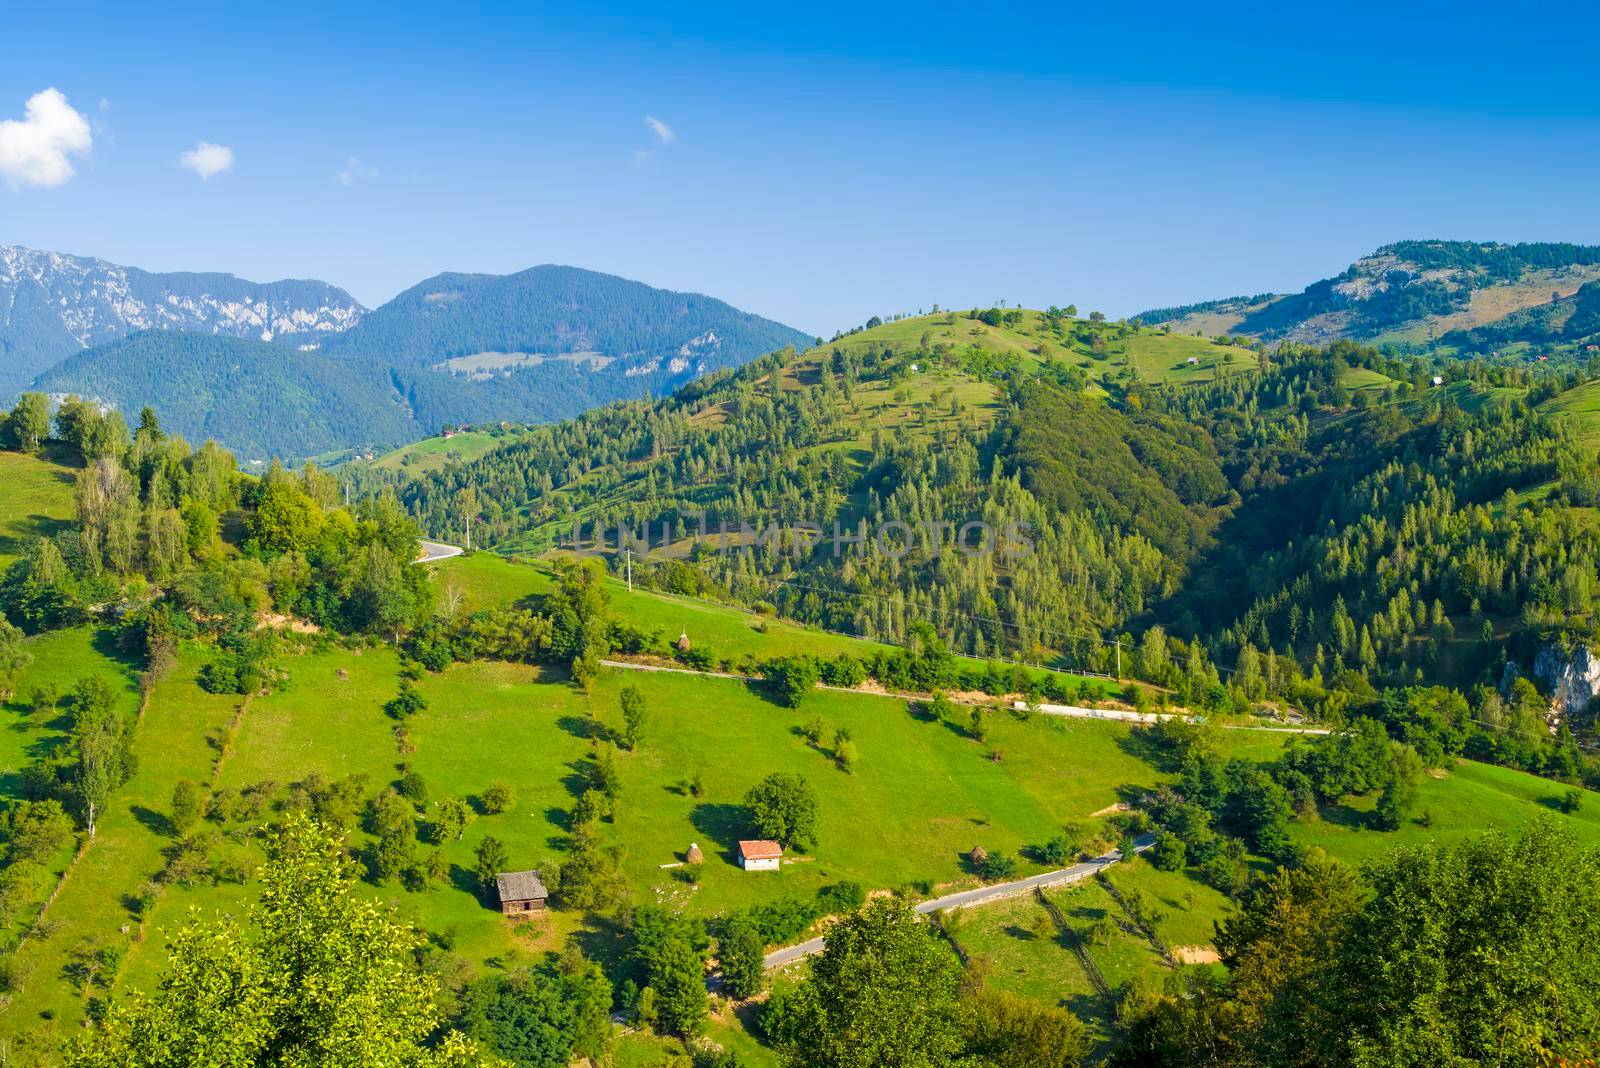 Green hills in rural scene, summer landscape in Romanian Carpathians